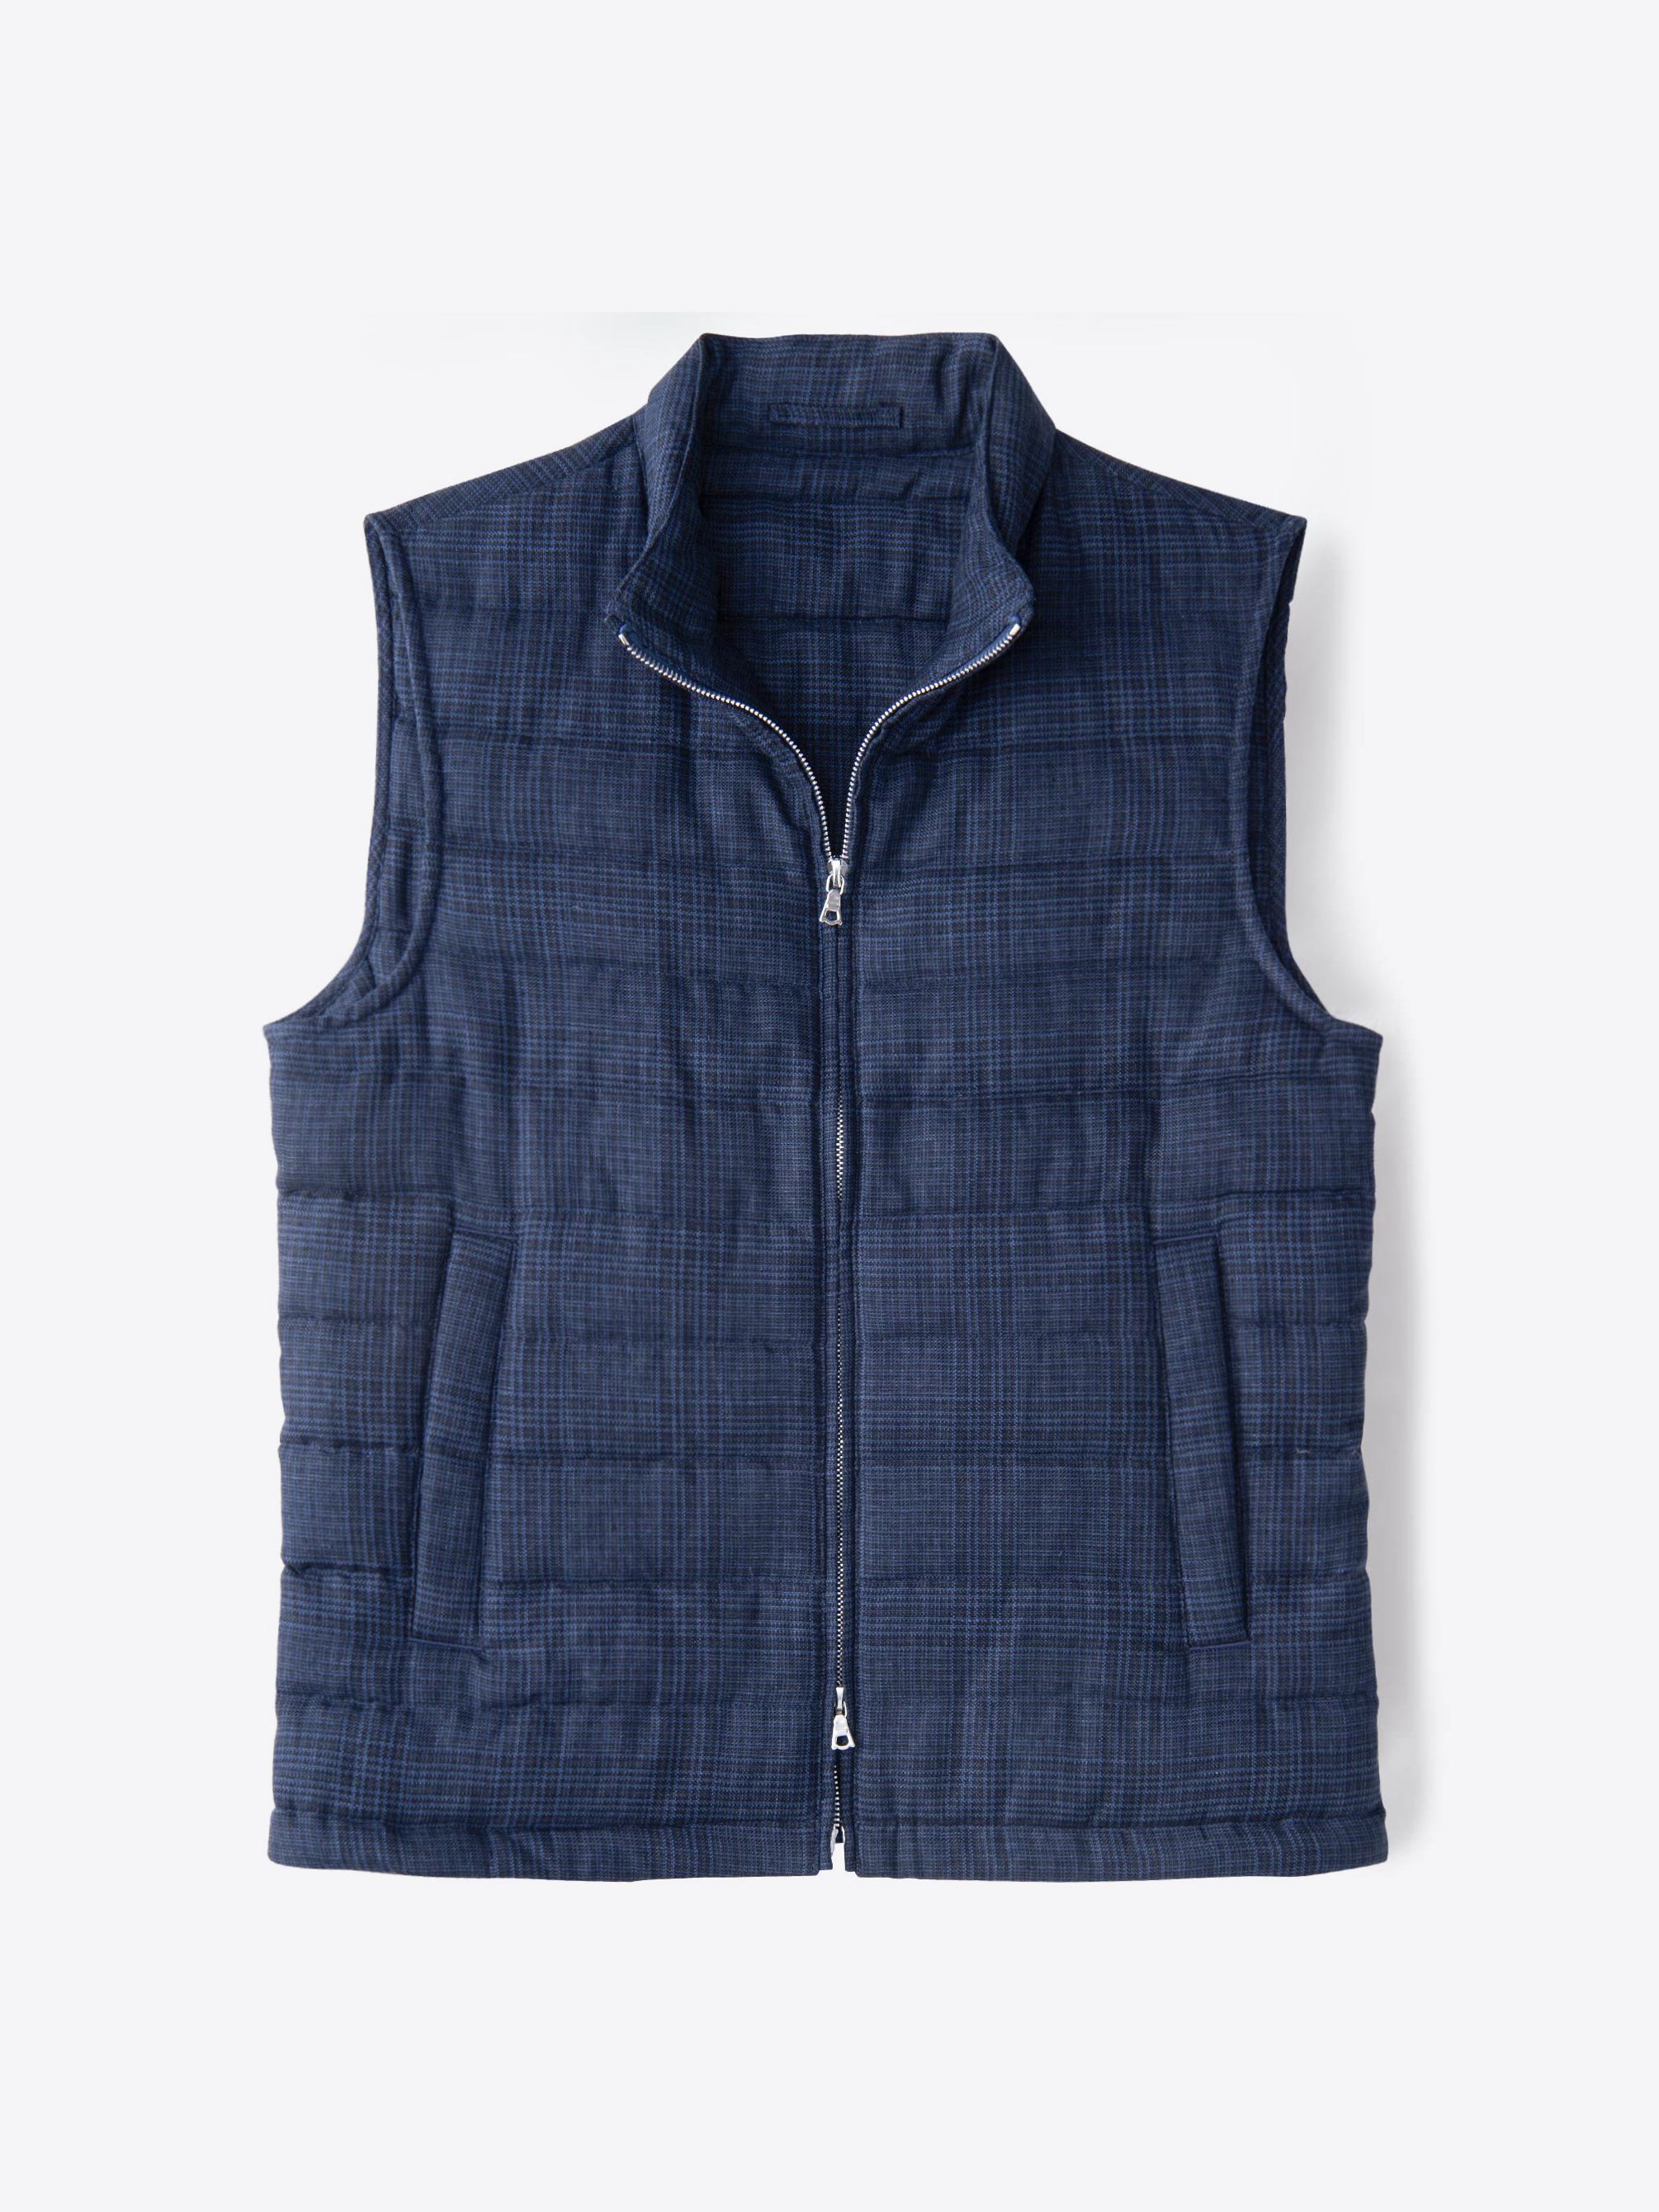 Zoom Image of Brera Navy Glen Plaid Cotton and Linen Zip Vest